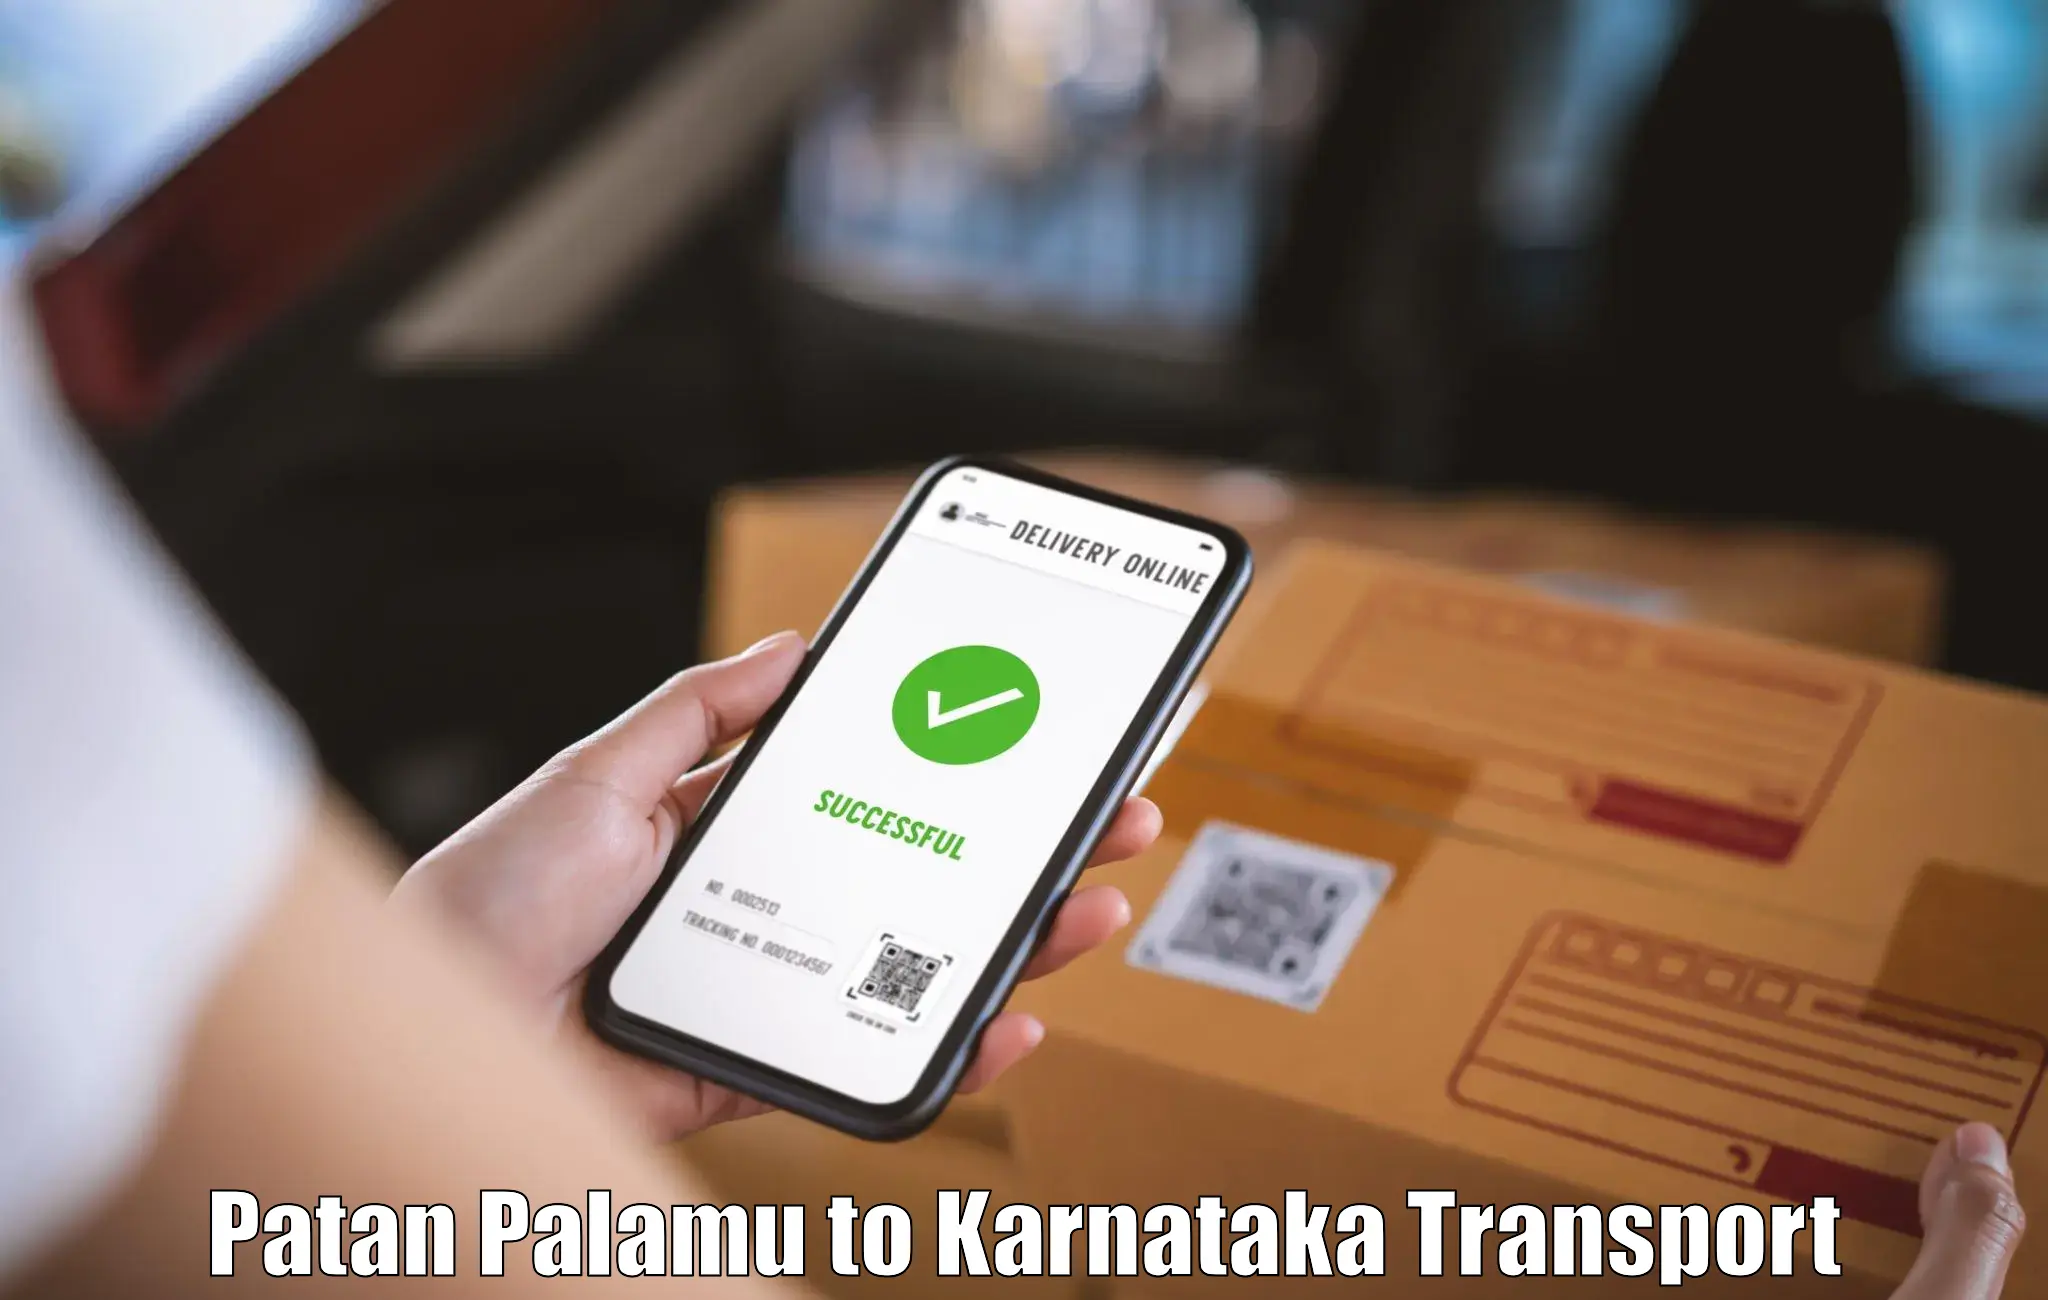 Online transport service in Patan Palamu to Tumkur